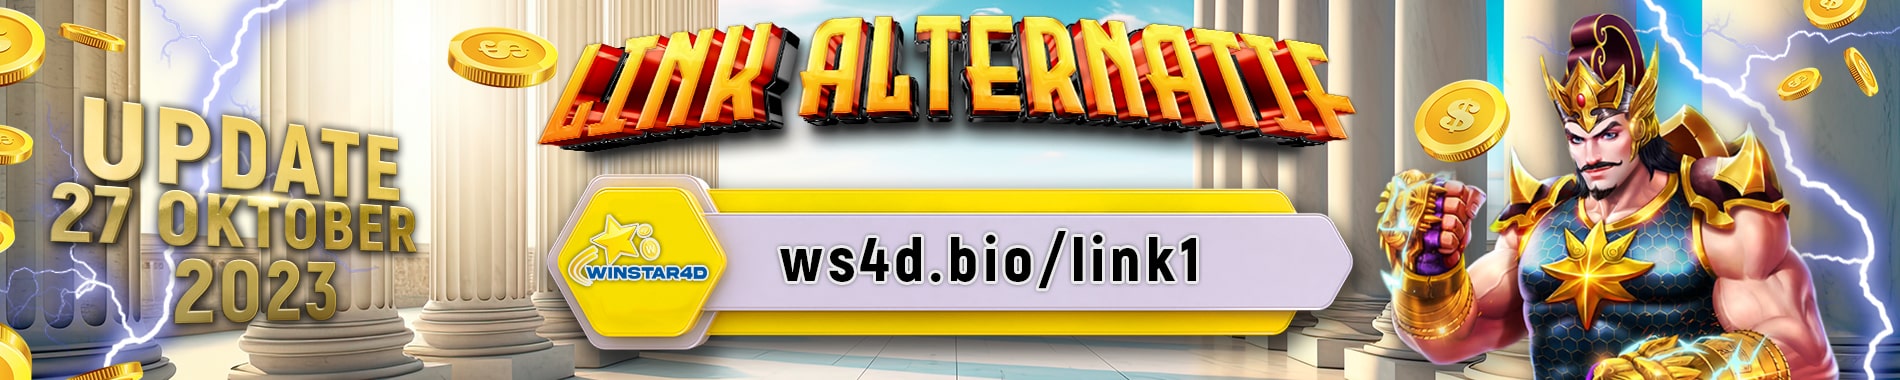 link alternatif winstar4d